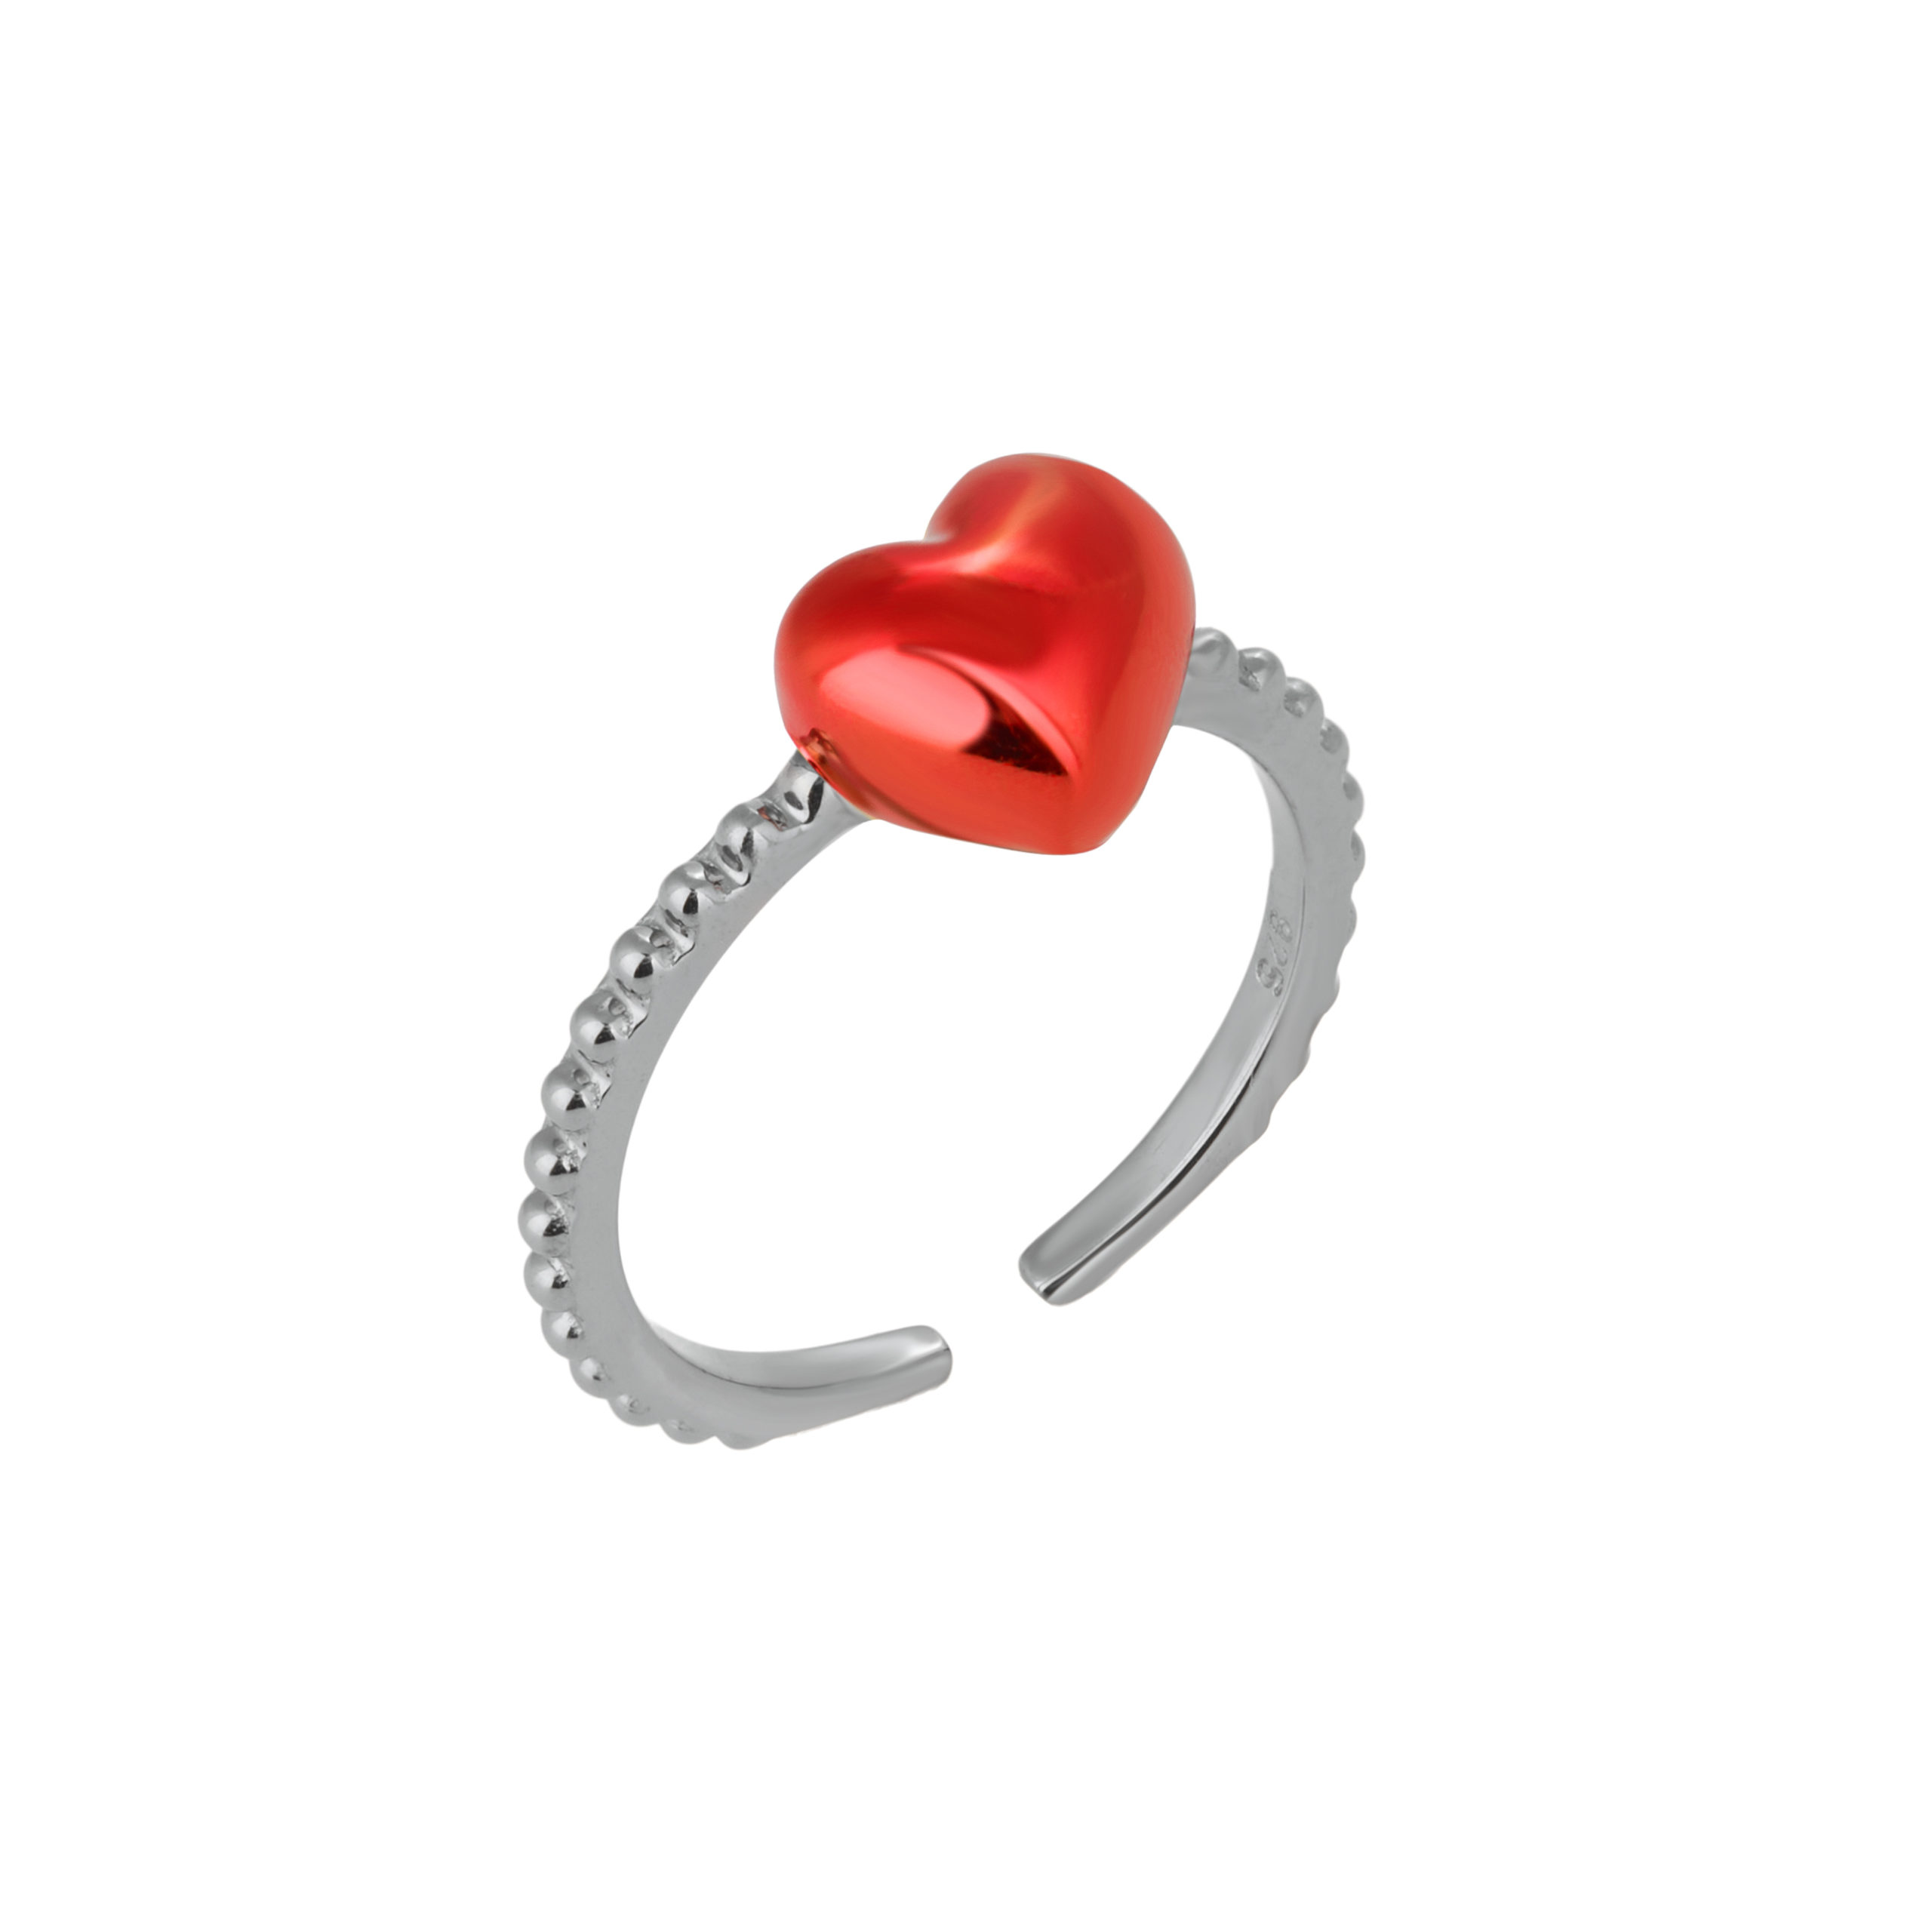 δαχτυλίδι ασήμι ‘γράνα’ καρδιά με νανοκεραμική βαφή